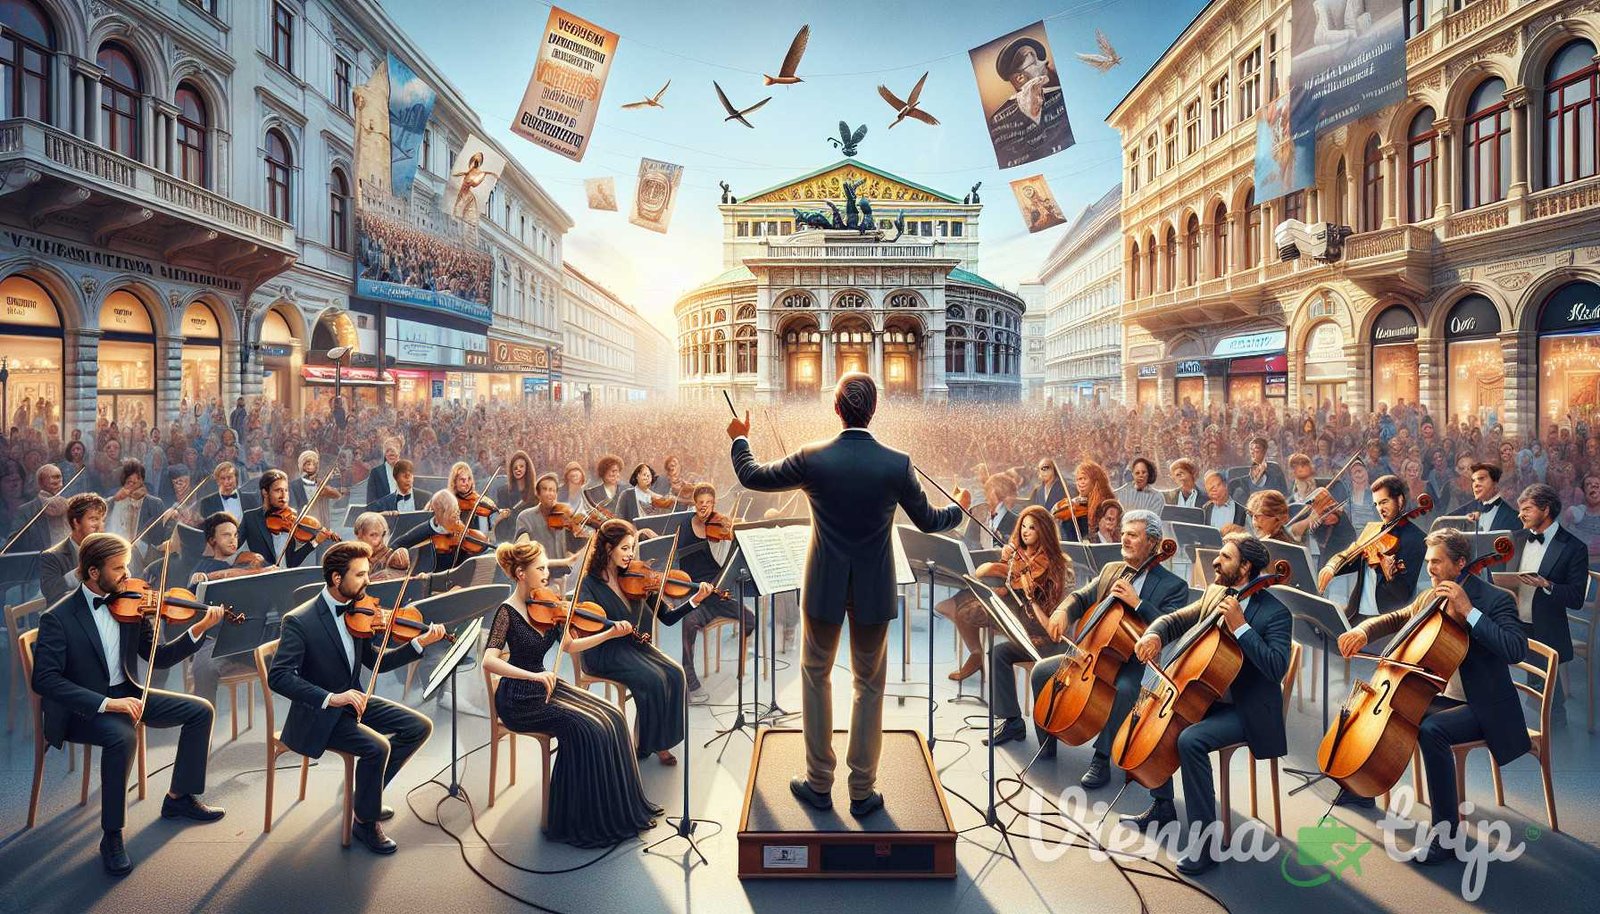 Illustrazione per la sezione: Le incantevoli melodie di Vienna si estendono oltre i teatri dell'opera e le sale da concerto. Le vibranti melodie mu - vienna della città